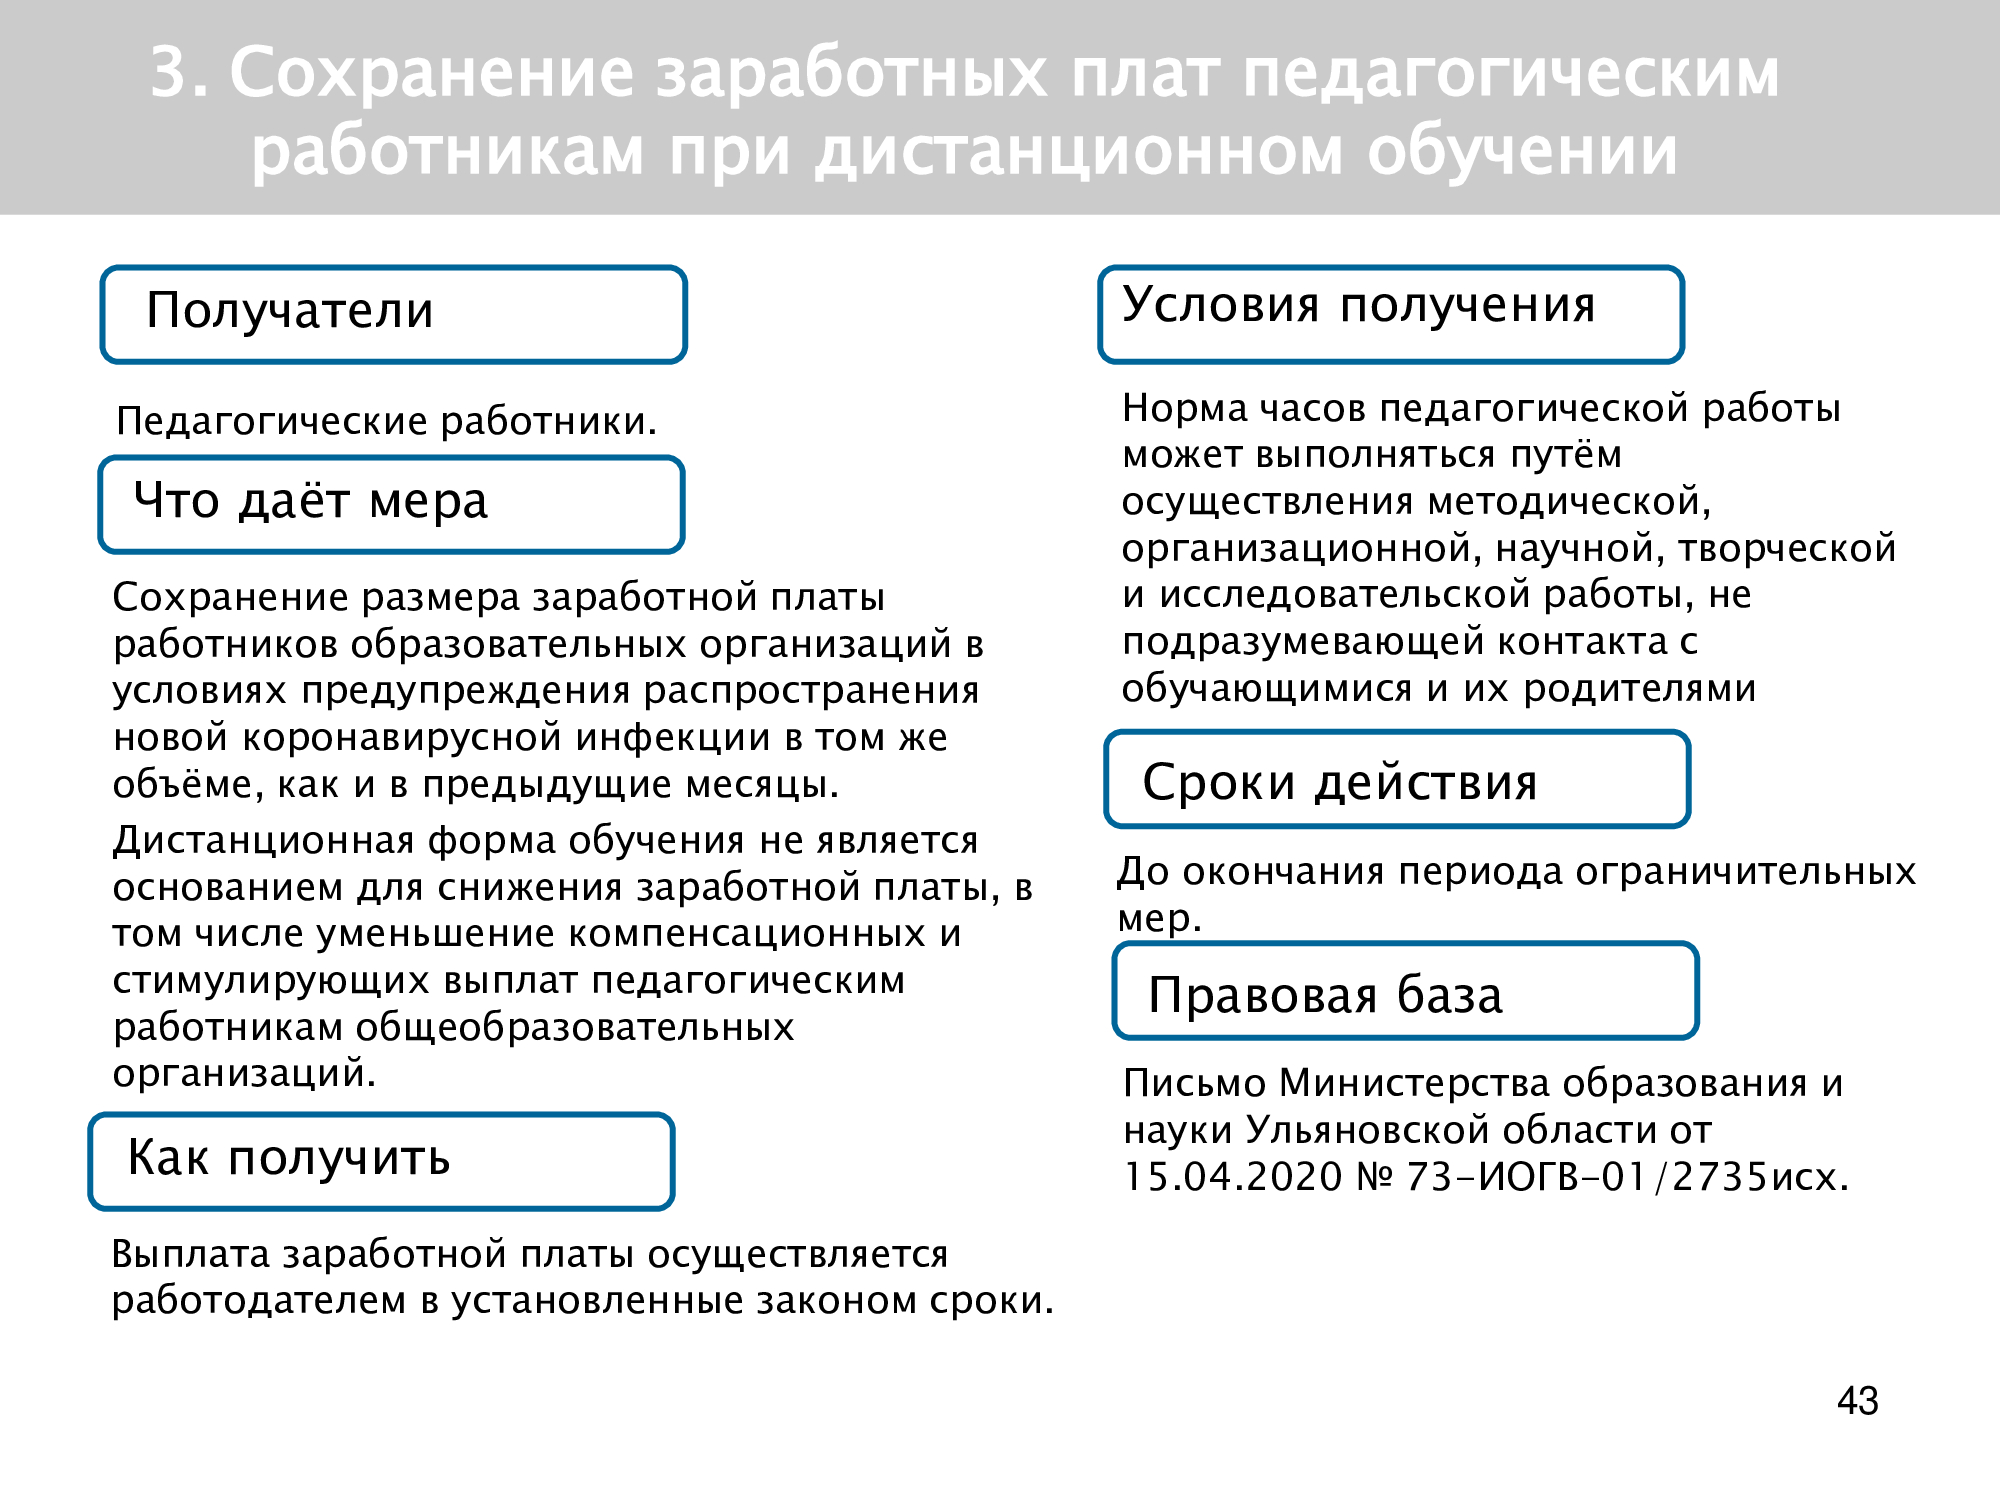 Список мер поддержки. Меры поддержки по 149 ПП Ульяновской области картинки. 149 ПП меры поддержки Ульяновской области картинки.